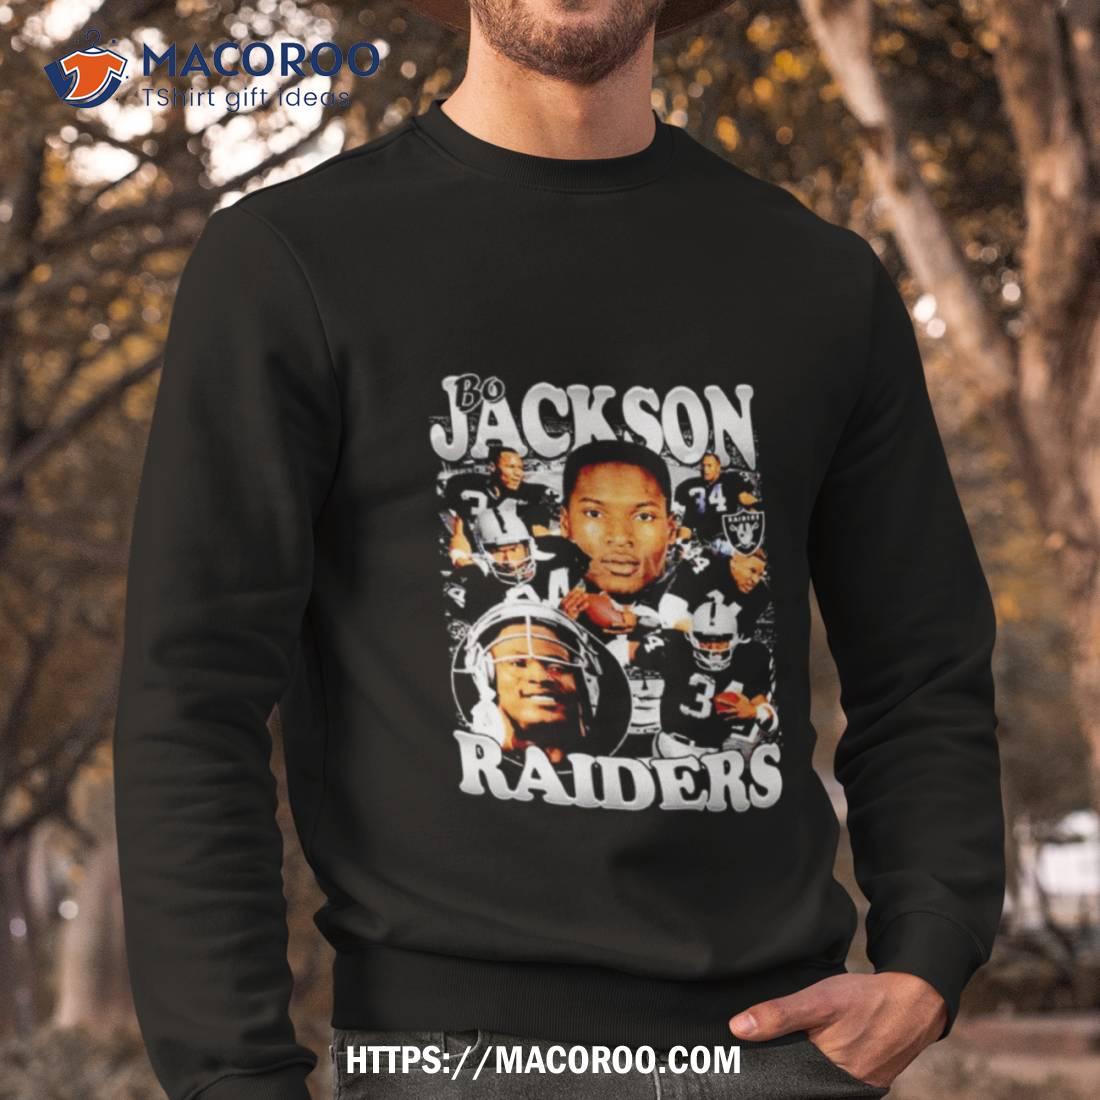 Bo Jackson Raiders Nfl Football Retro Shirt